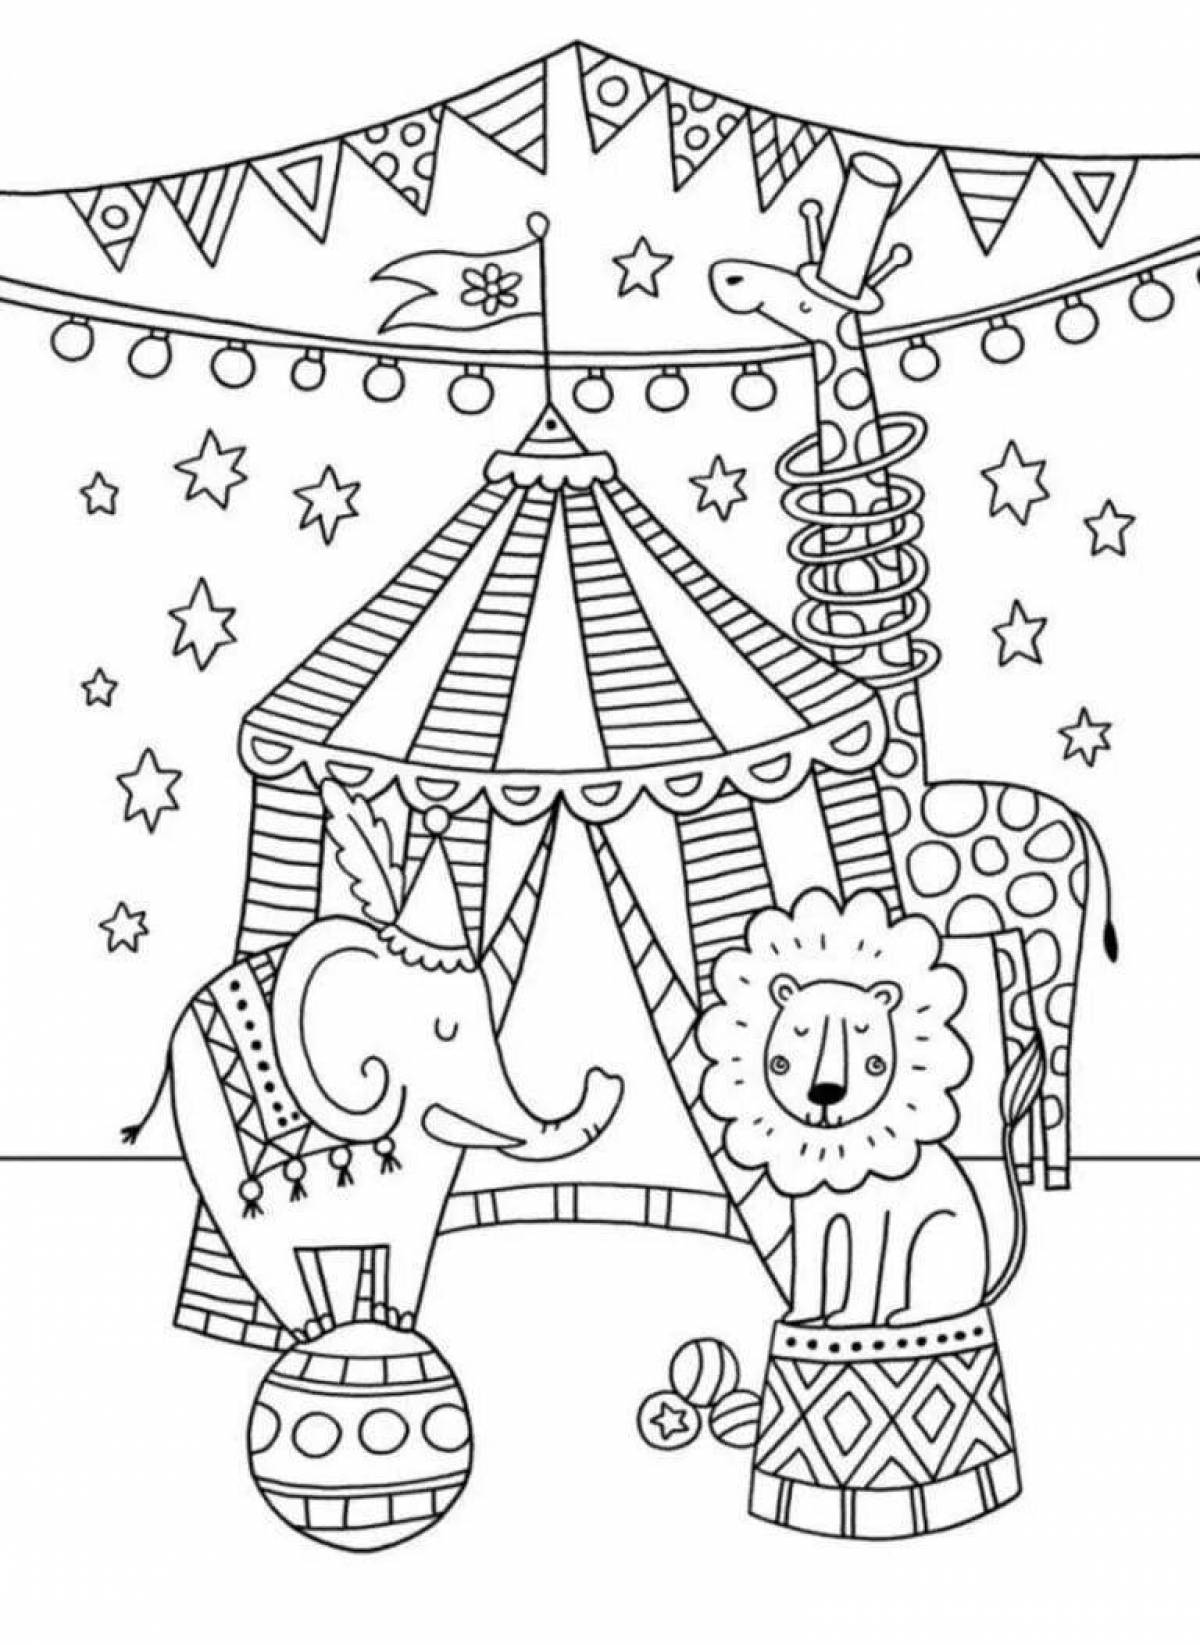 Веселая цирковая раскраска для детей 7-8 лет